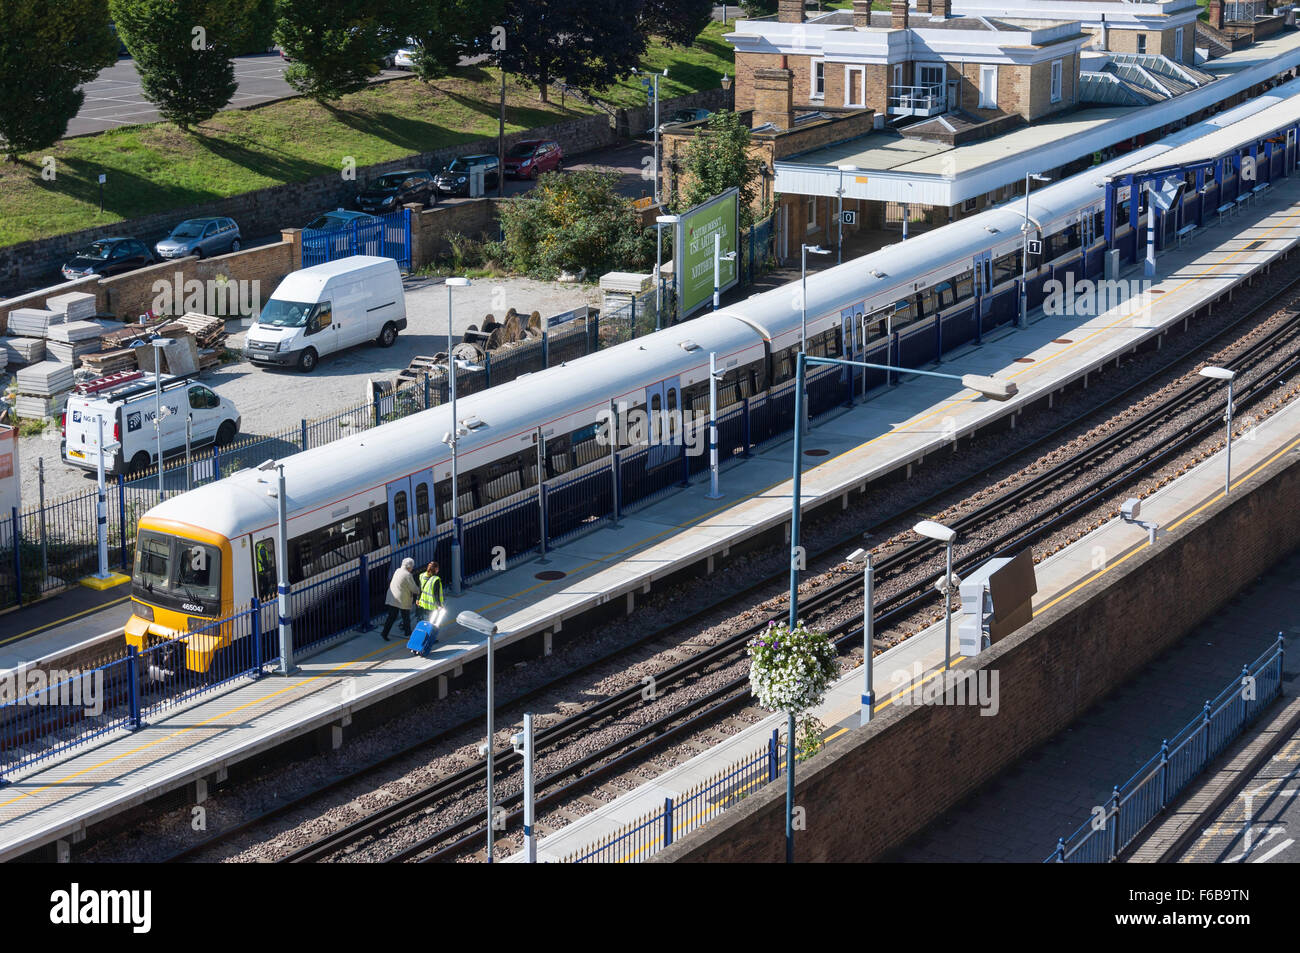 Train à la plate-forme, la gare de Gravesend, Gravesend, Kent, Angleterre, Royaume-Uni Banque D'Images